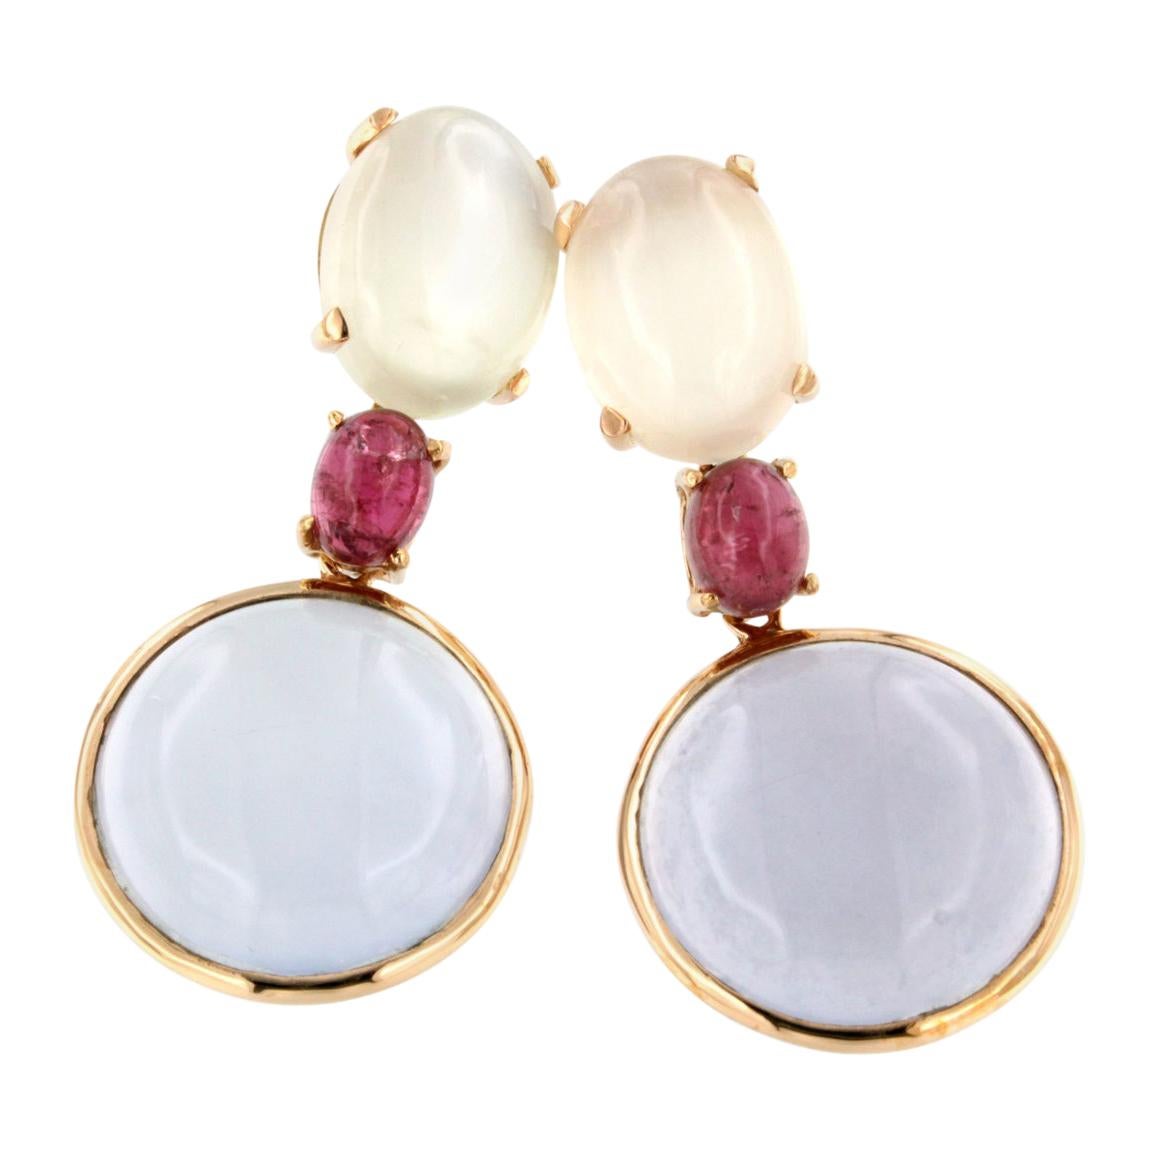 Boucles d'oreilles en or rose 18 carats avec calcédoine, tourmaline rose et pierre de lune blanche